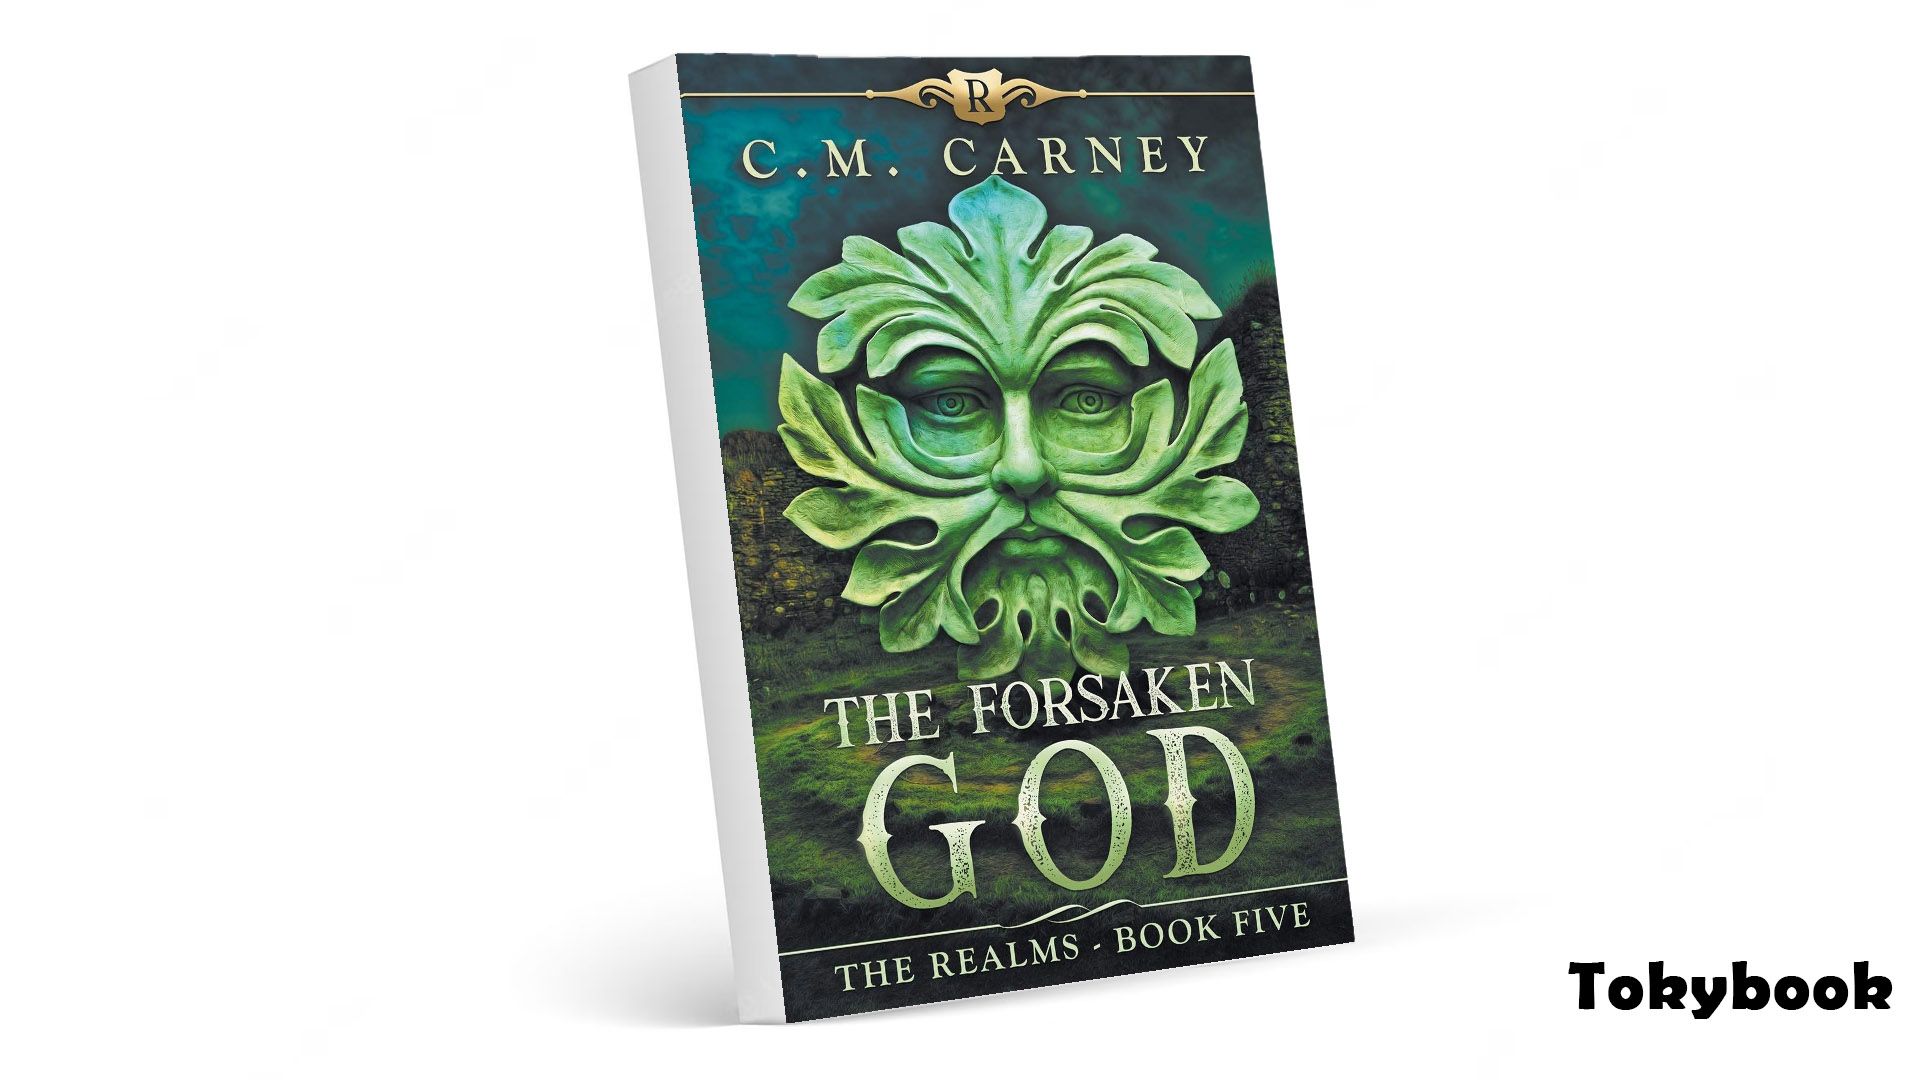 The Forsaken God: An Epic LitRPG/GameLit Adventure audiobook - The Realms Series